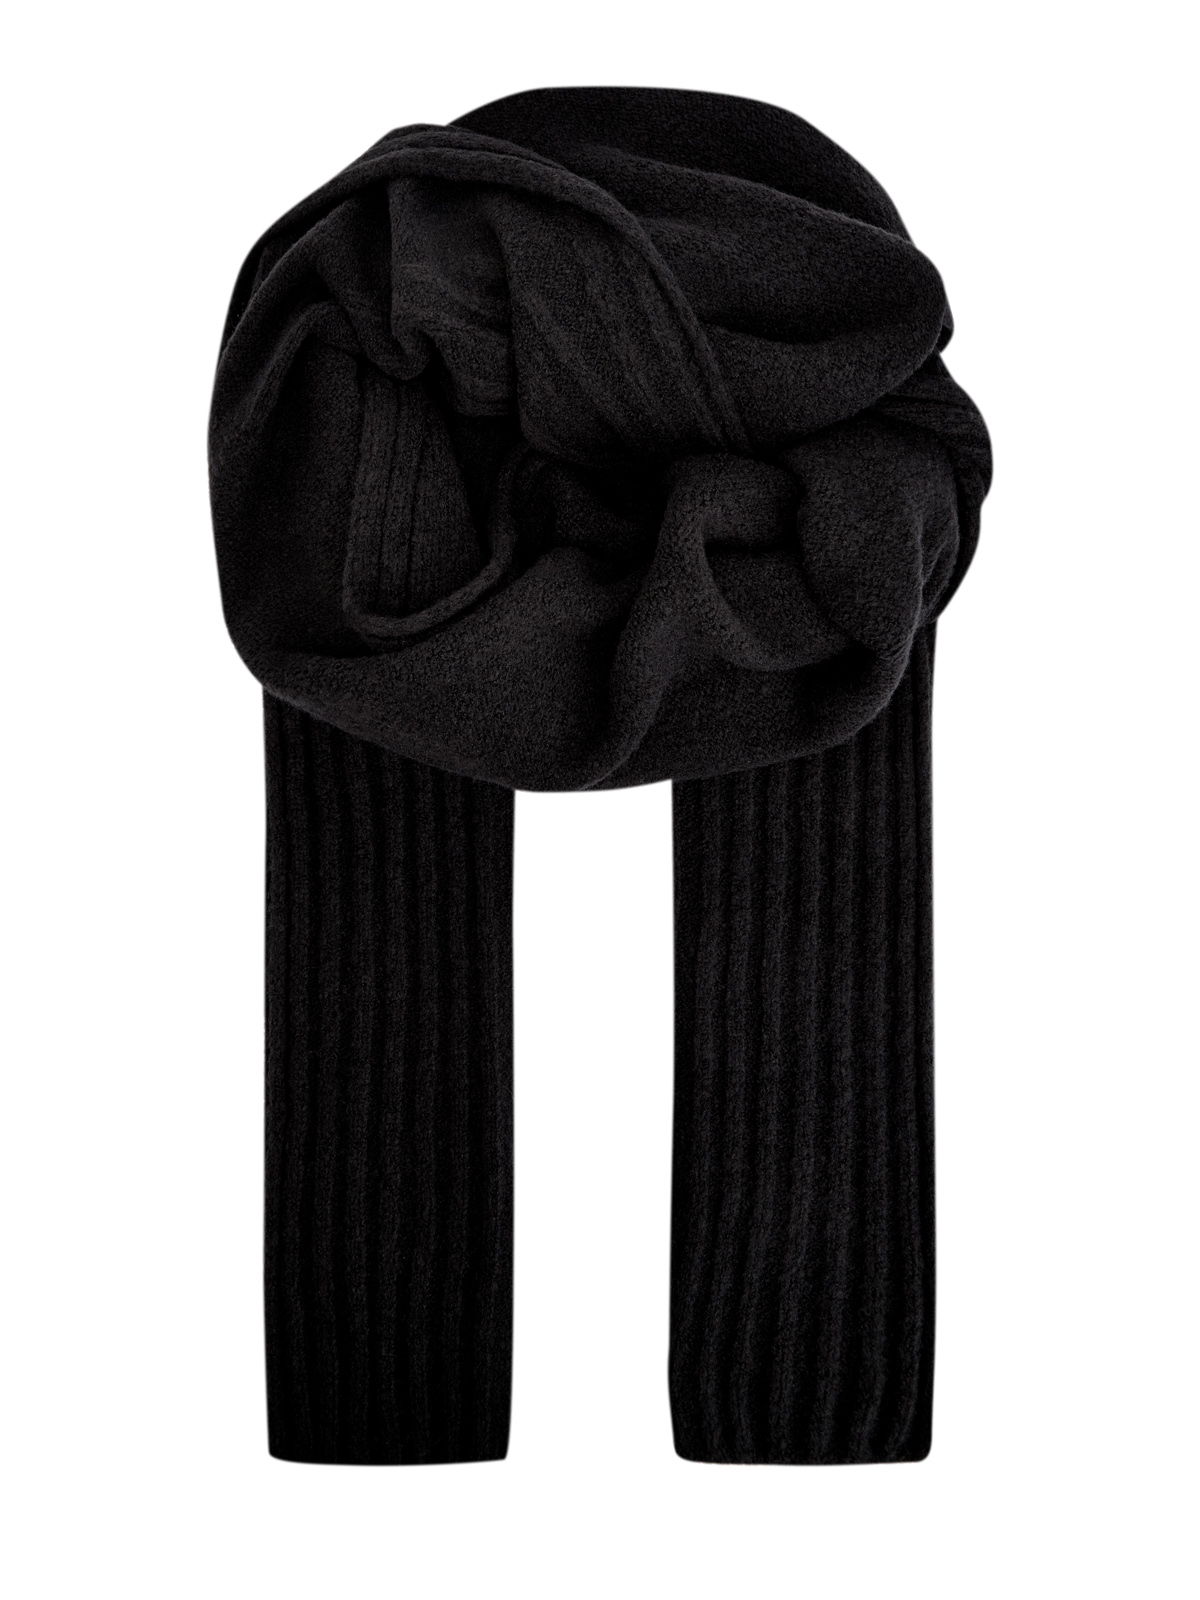 Длинный шарф из шерстяной пряжи фактурной вязки GENTRYPORTOFINO, цвет черный, размер 41;42;43.5;44;45